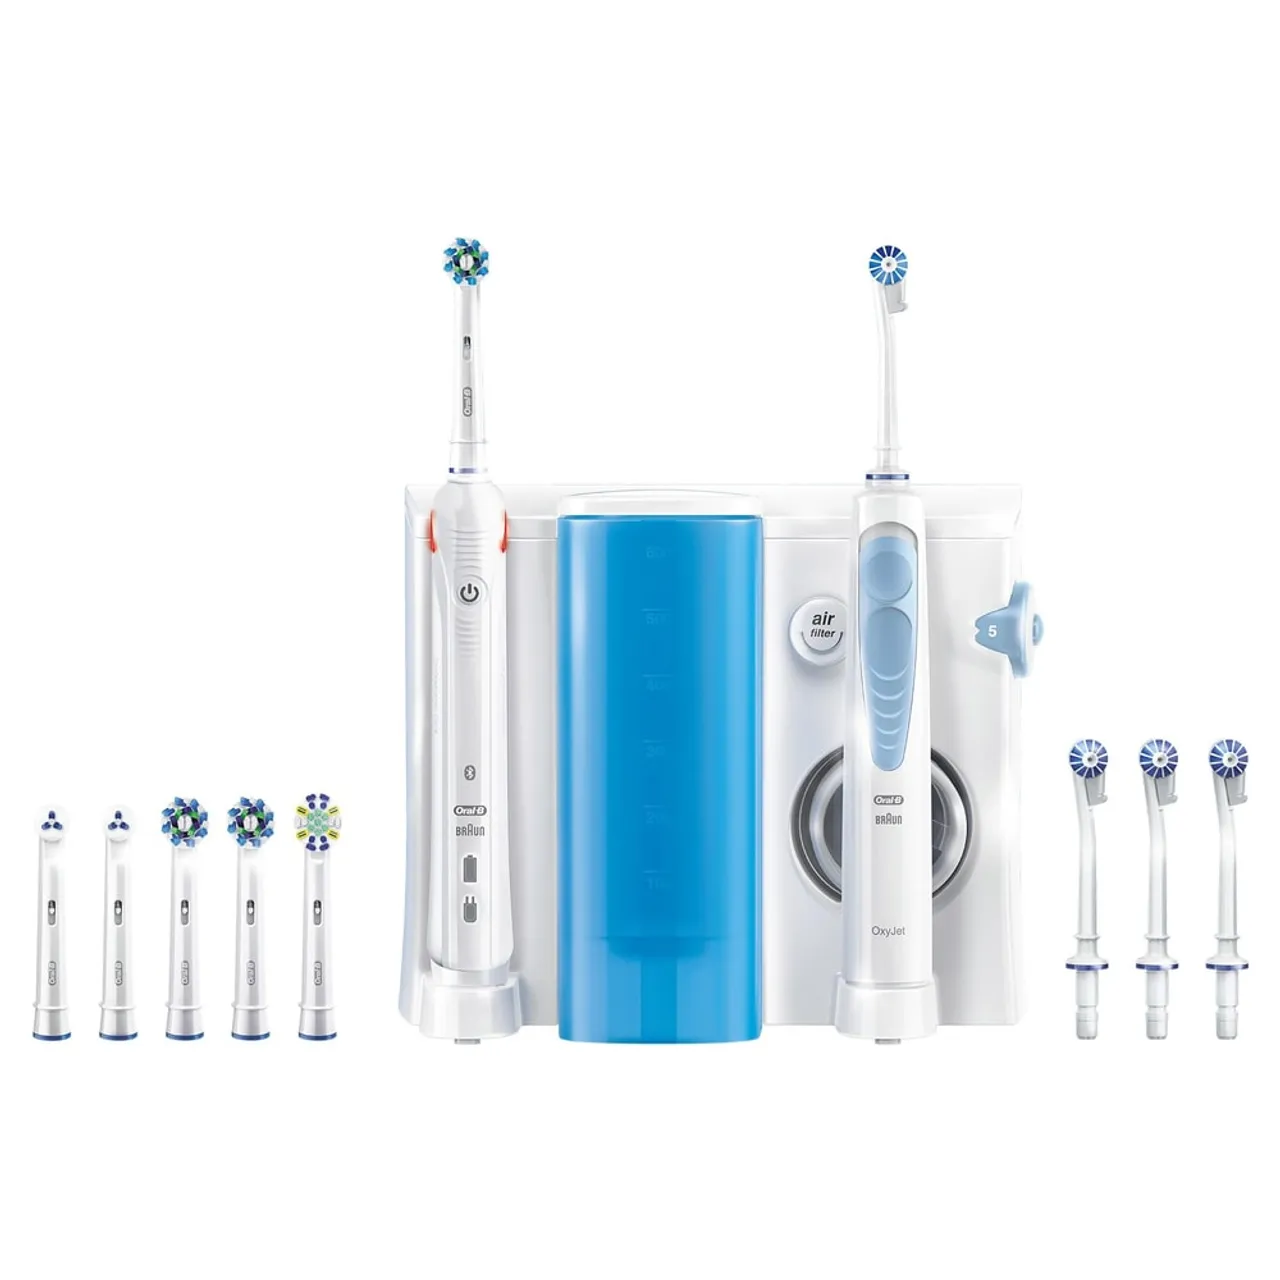 SMART 5000 + OxyJet Zahnpflegesystem